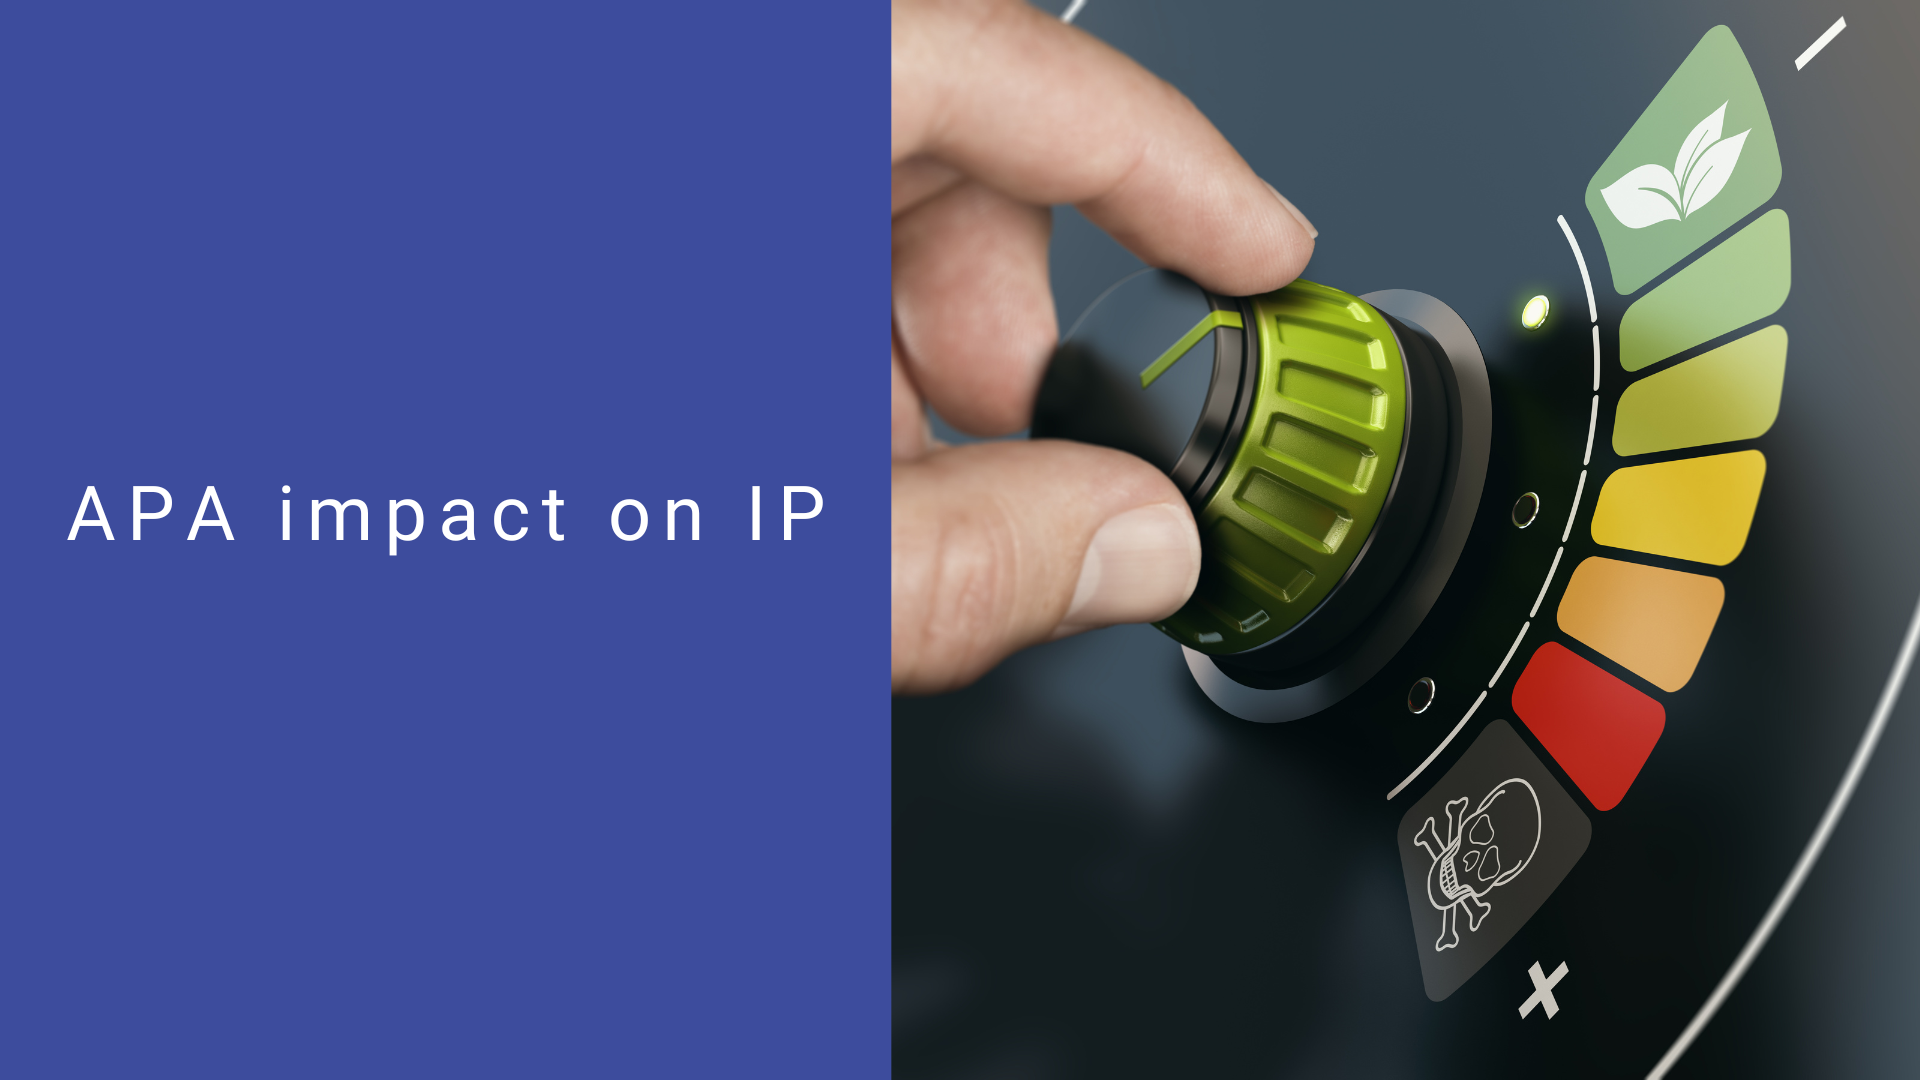 APA impact on IP